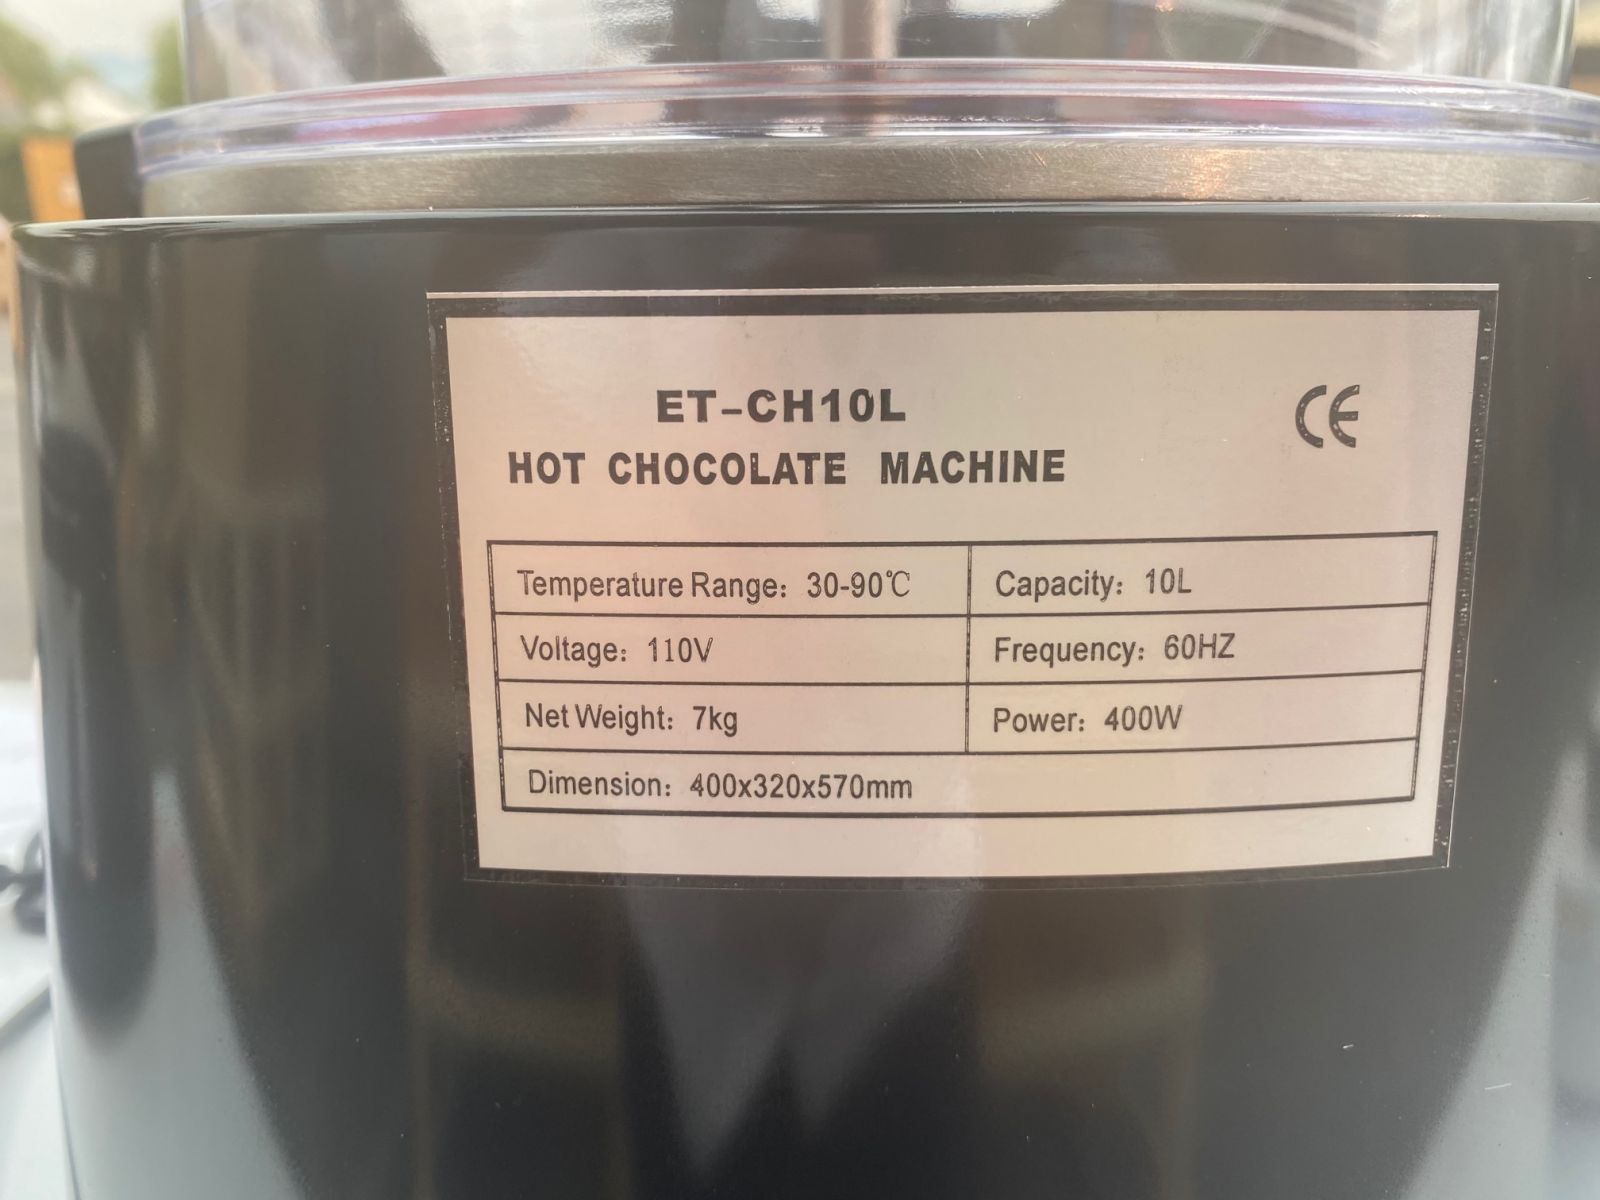 Chocolady 10 Liter (2.6 Gallon) Hot Chocolate Dispenser Black 110V US/220V  EU